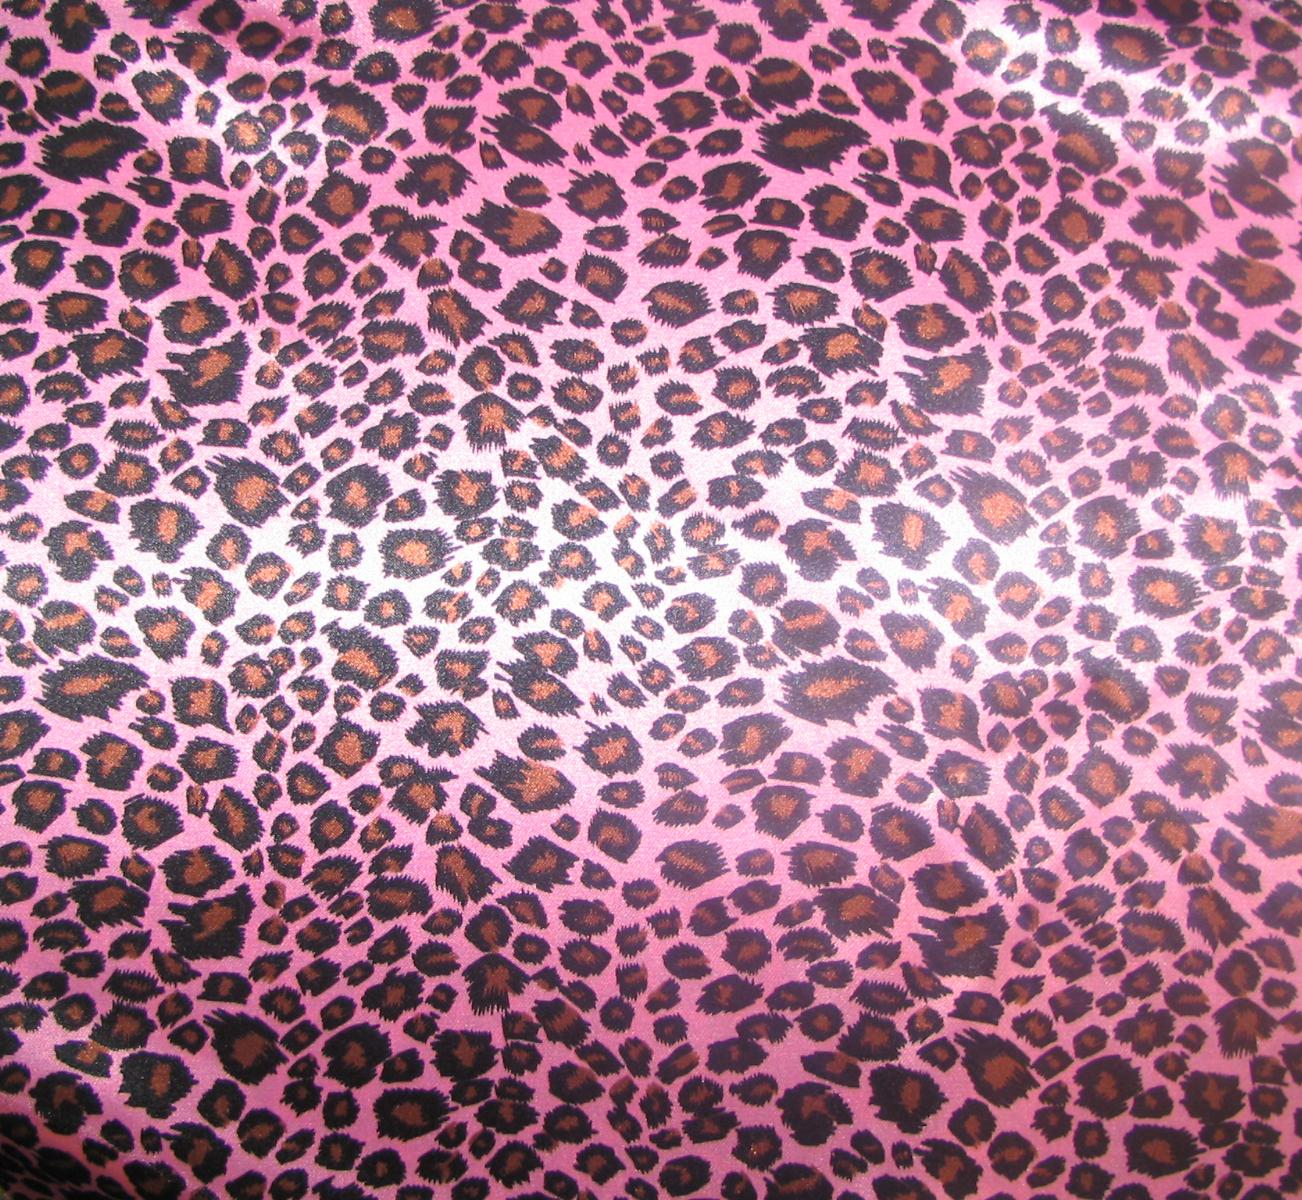 [46+] Pink Leopard Print Wallpaper - WallpaperSafari